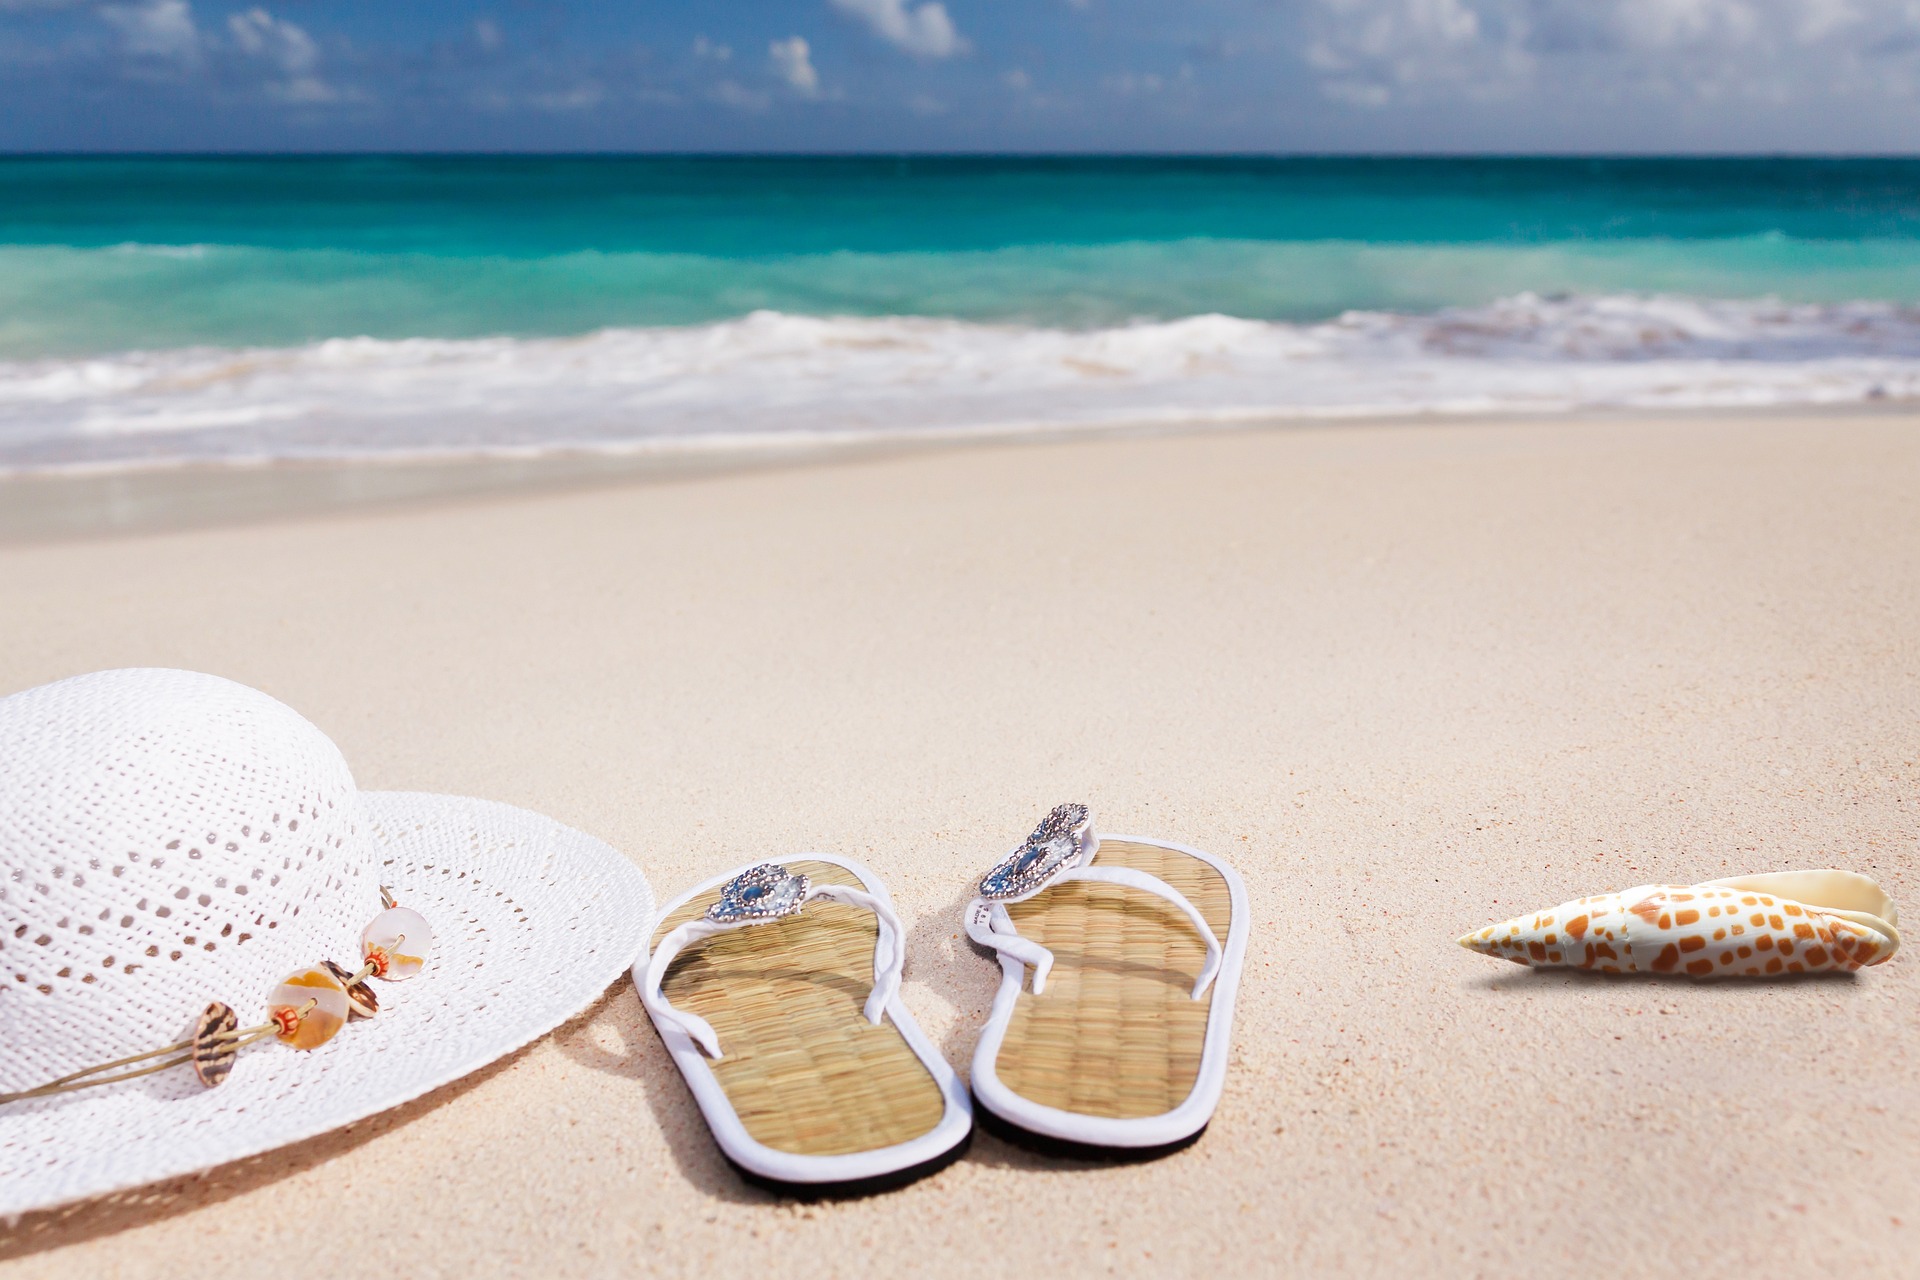 Na obrázku je klobouk a sandále položené na pláži u moře